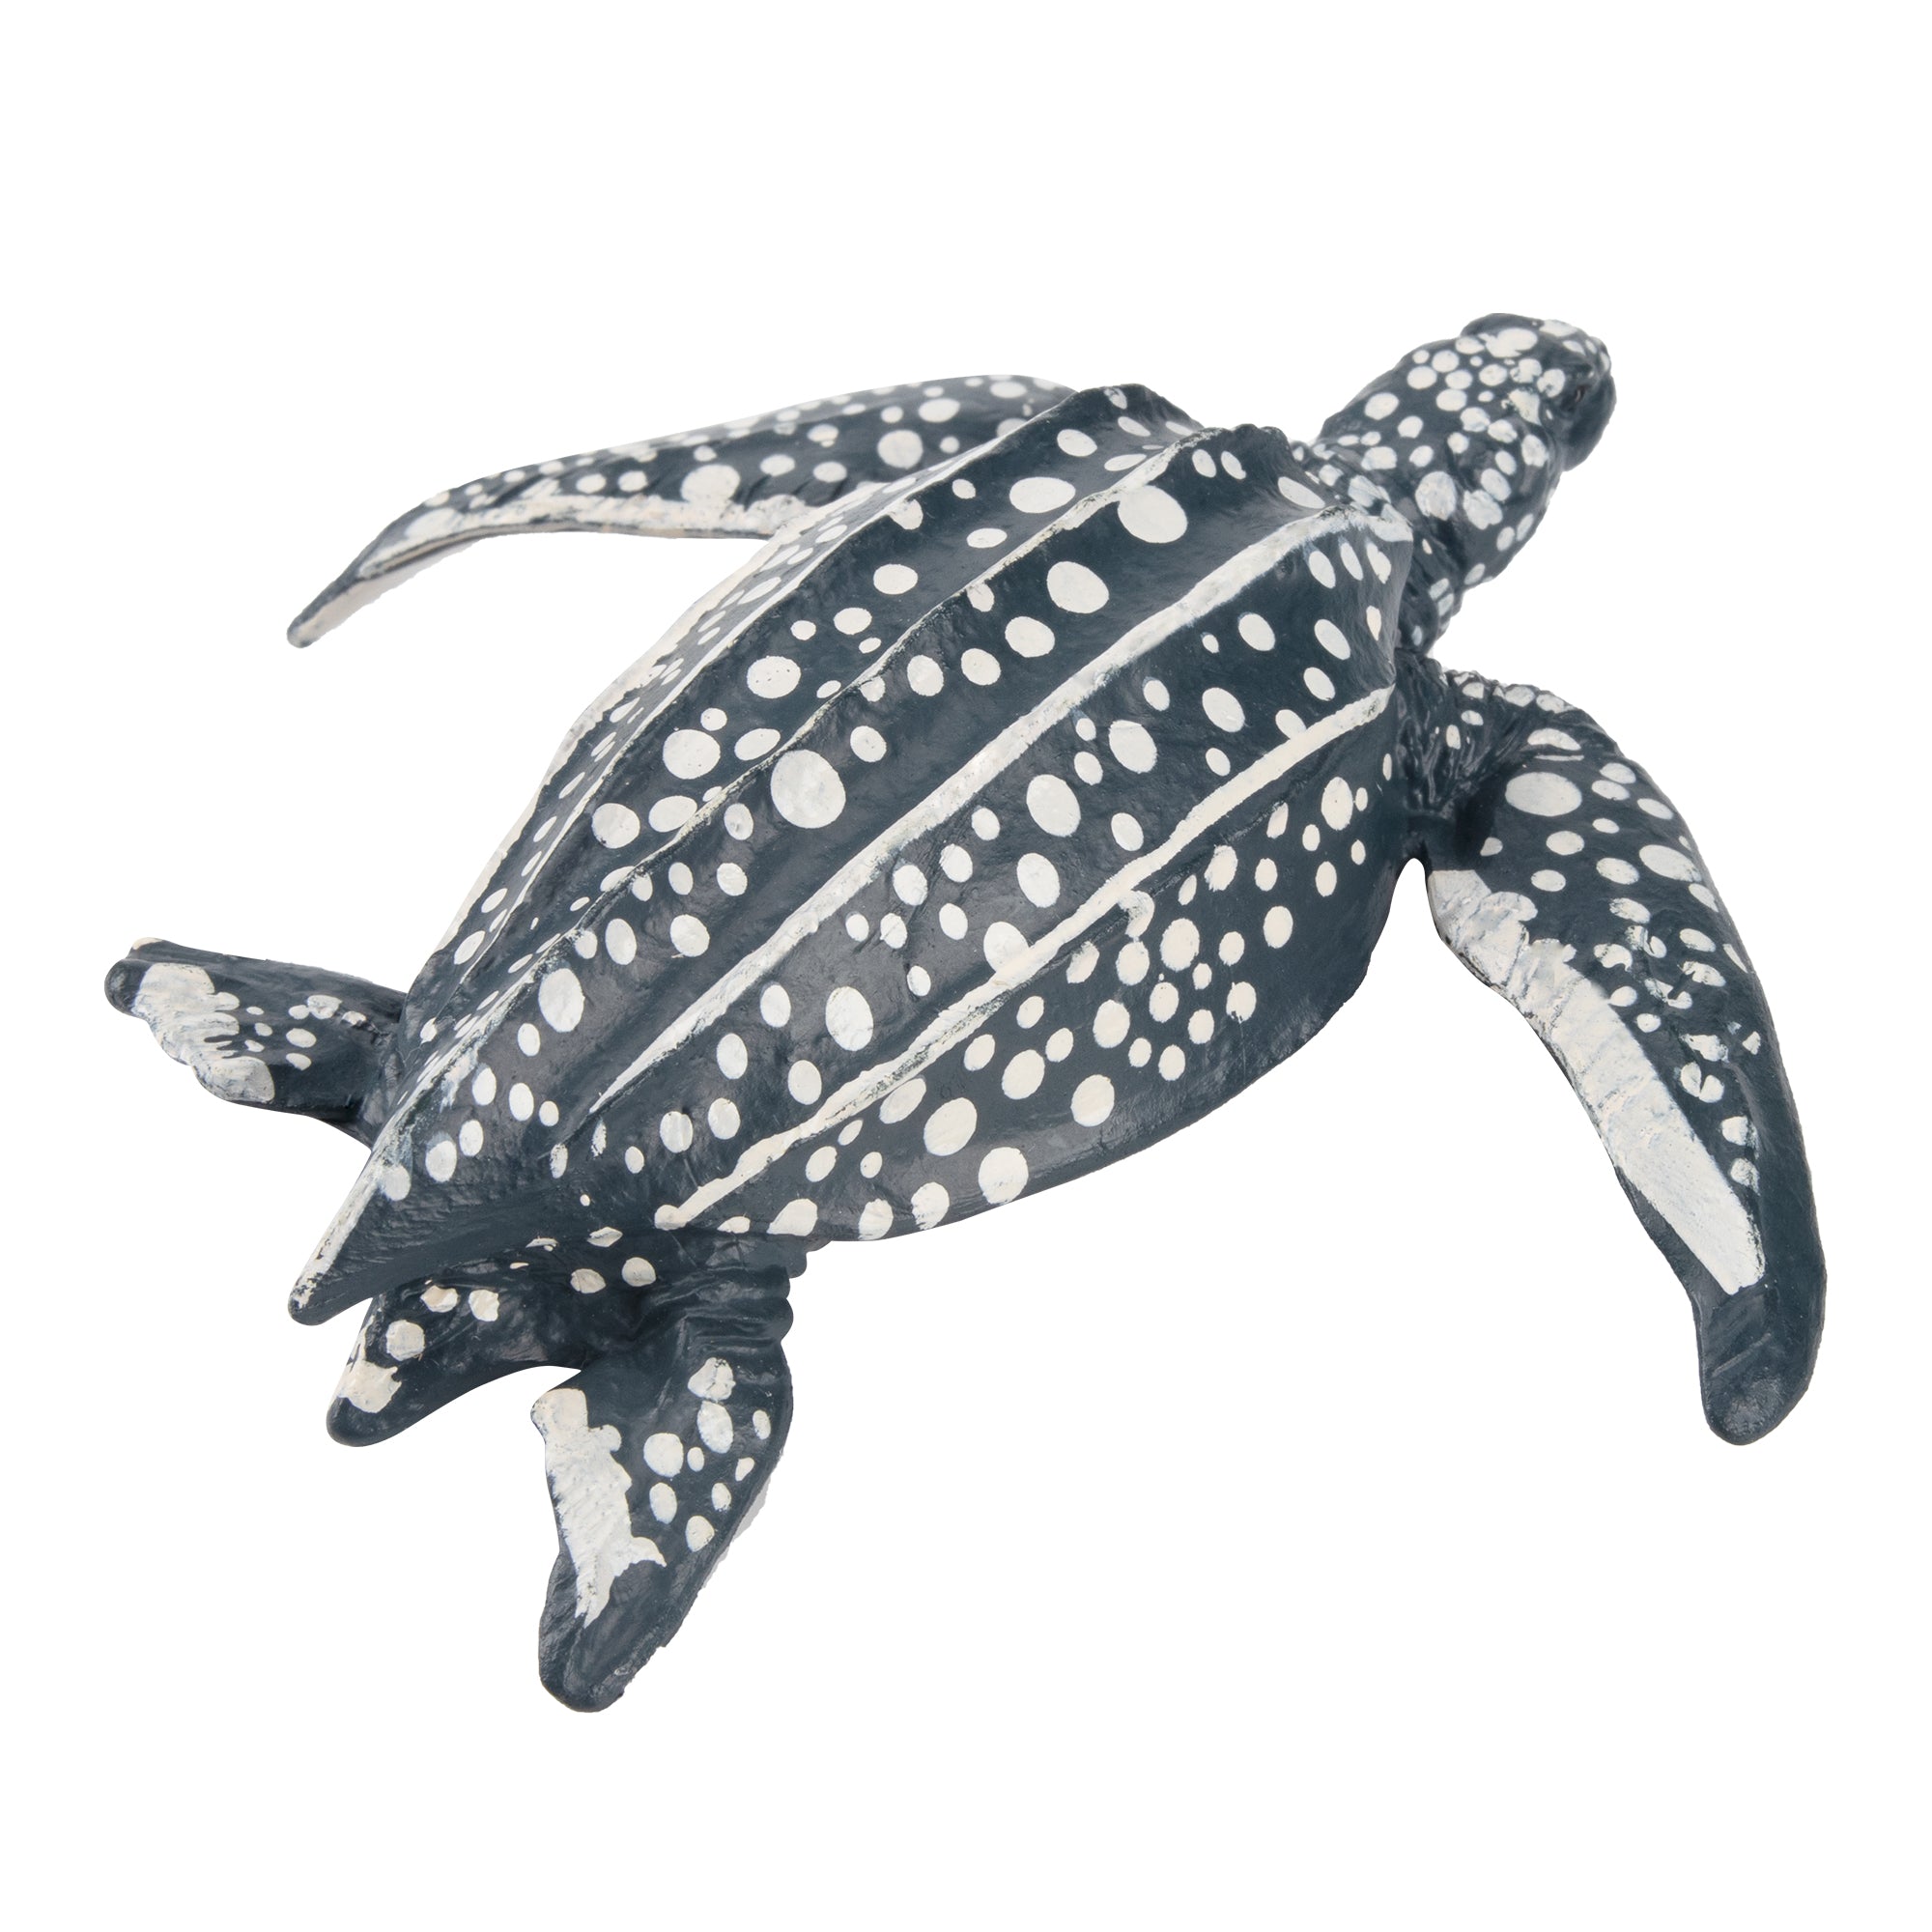 Toymany Leatherback Sea Turtle Figurine Toy-2